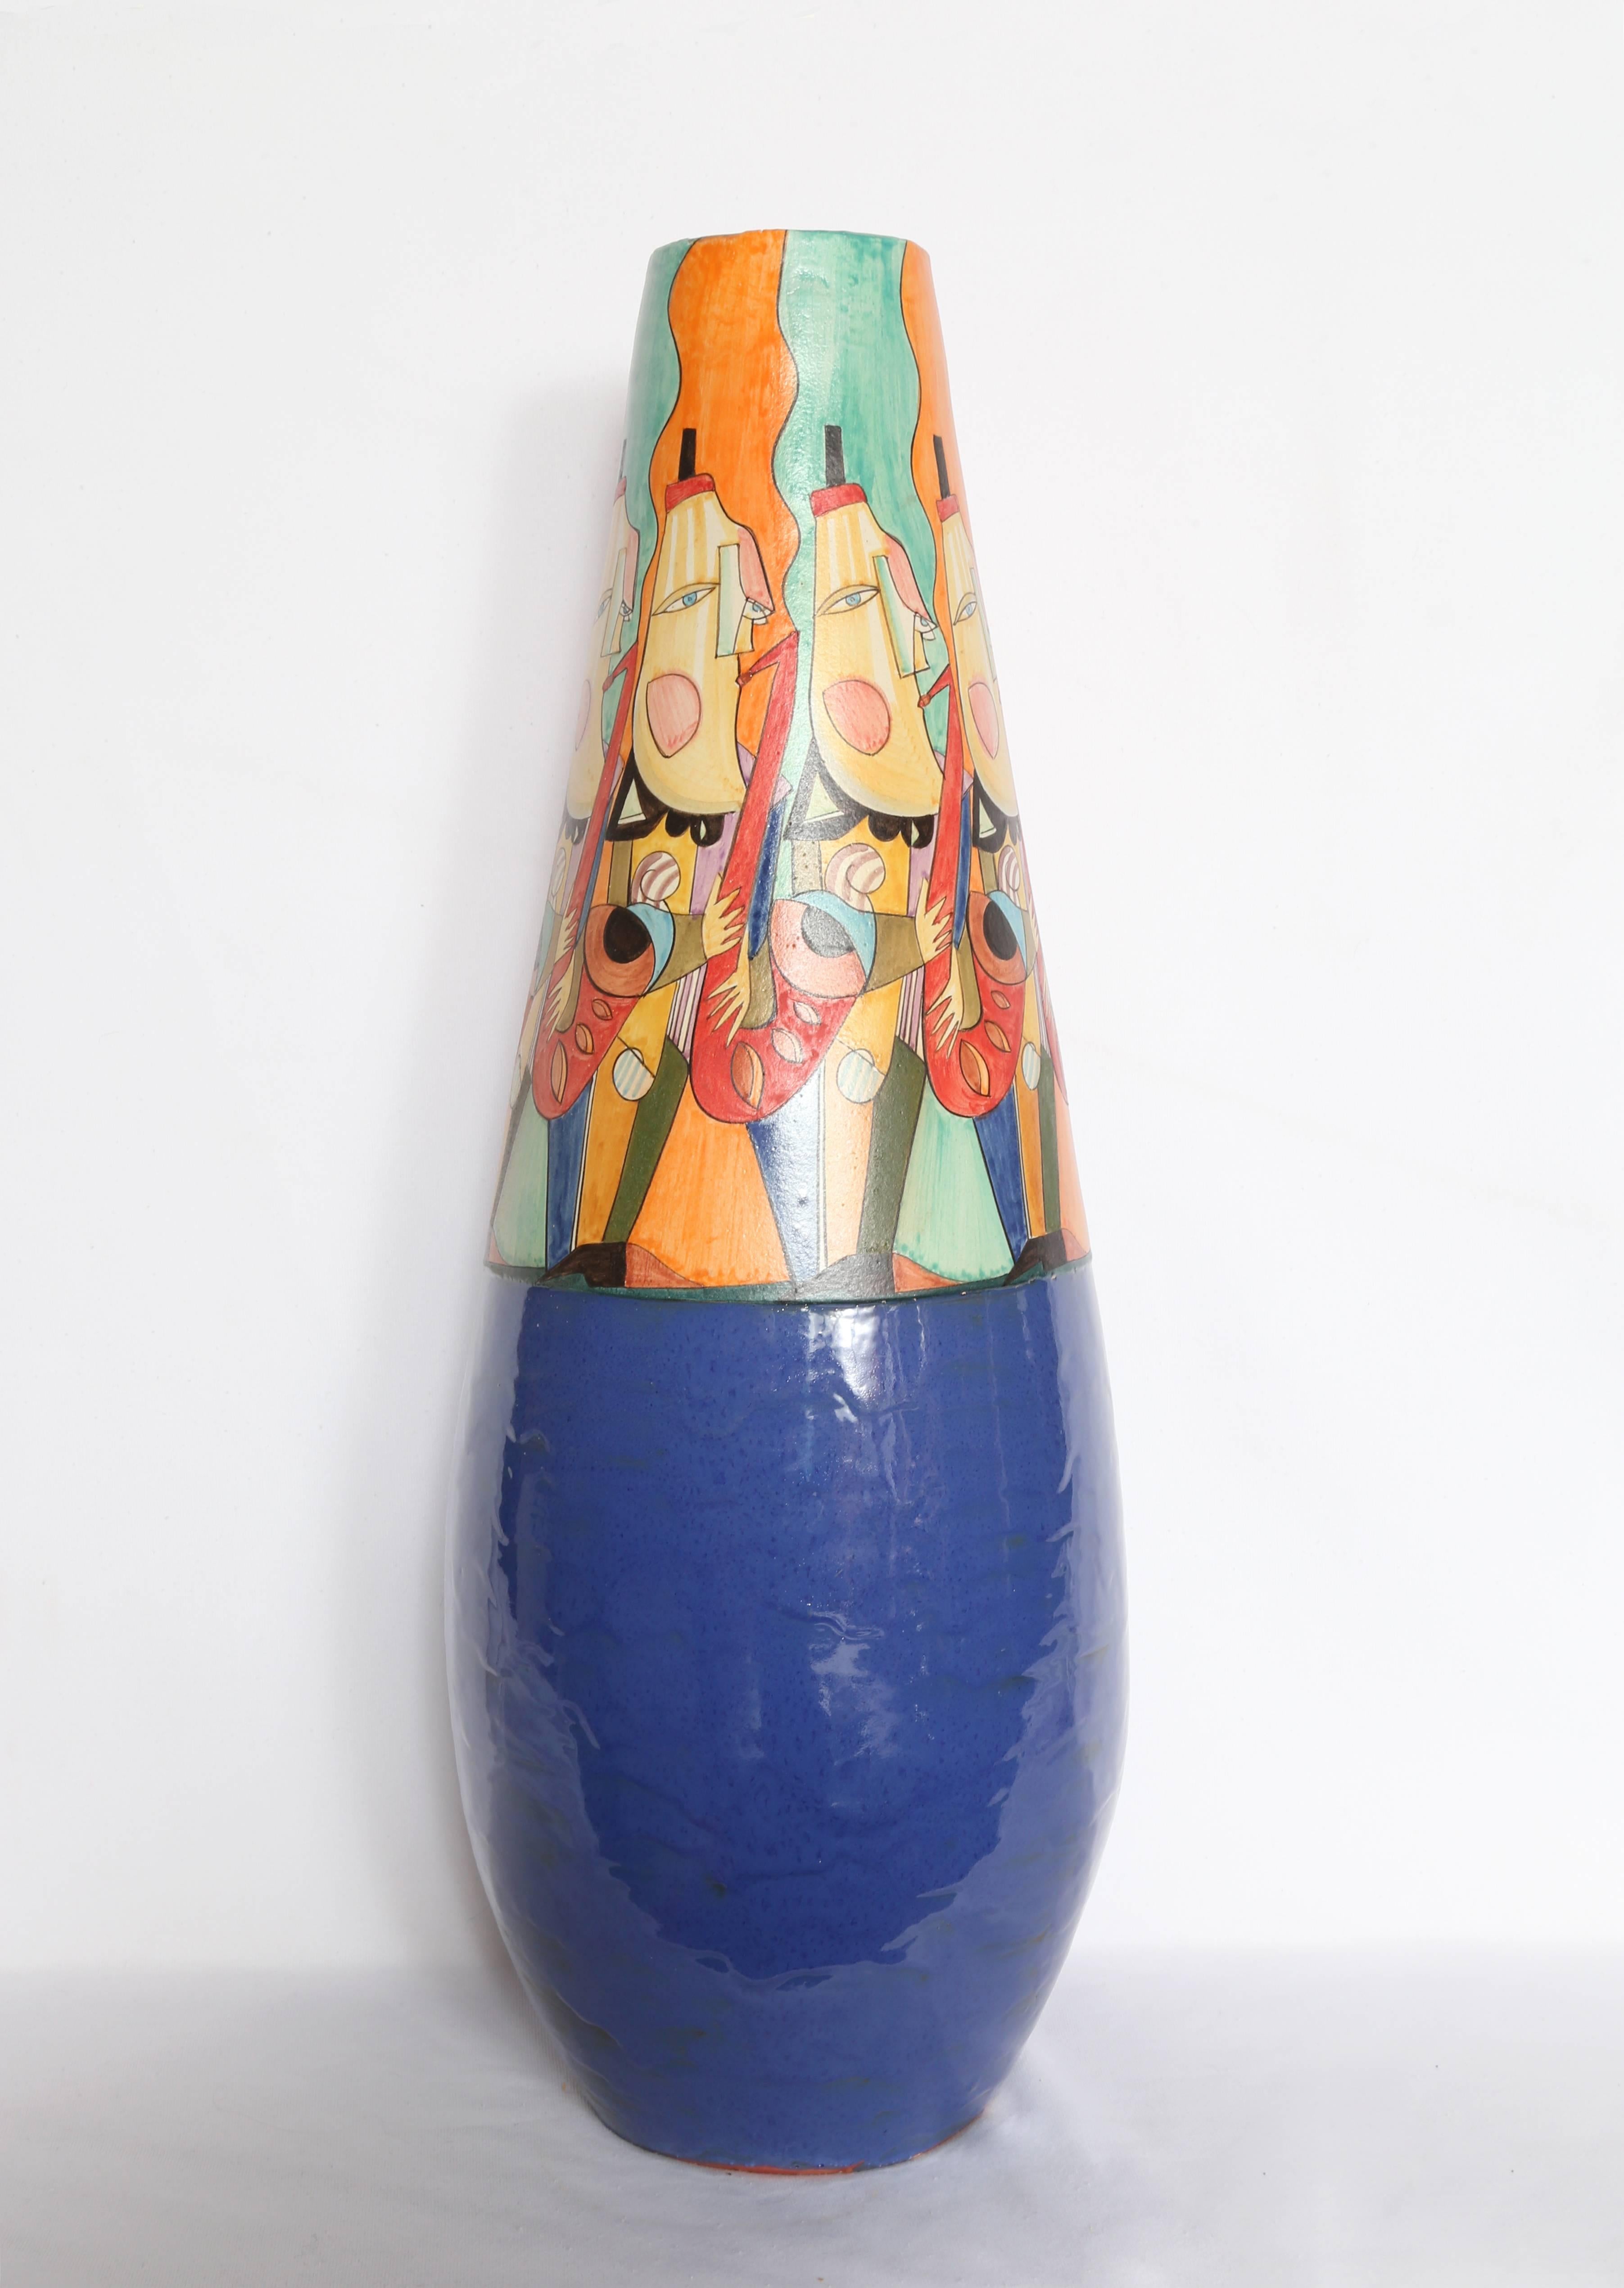 Artistics : Mirko' Guida (italien, né en 1980)
Titre : Cruche à fond bleu
Année : vers 2007
Moyen : Cruche en terre cuite peinte, signée 
Taille : 27.5  x 9  x 9 in. (69.85  x 22.86  x 22.86 cm)